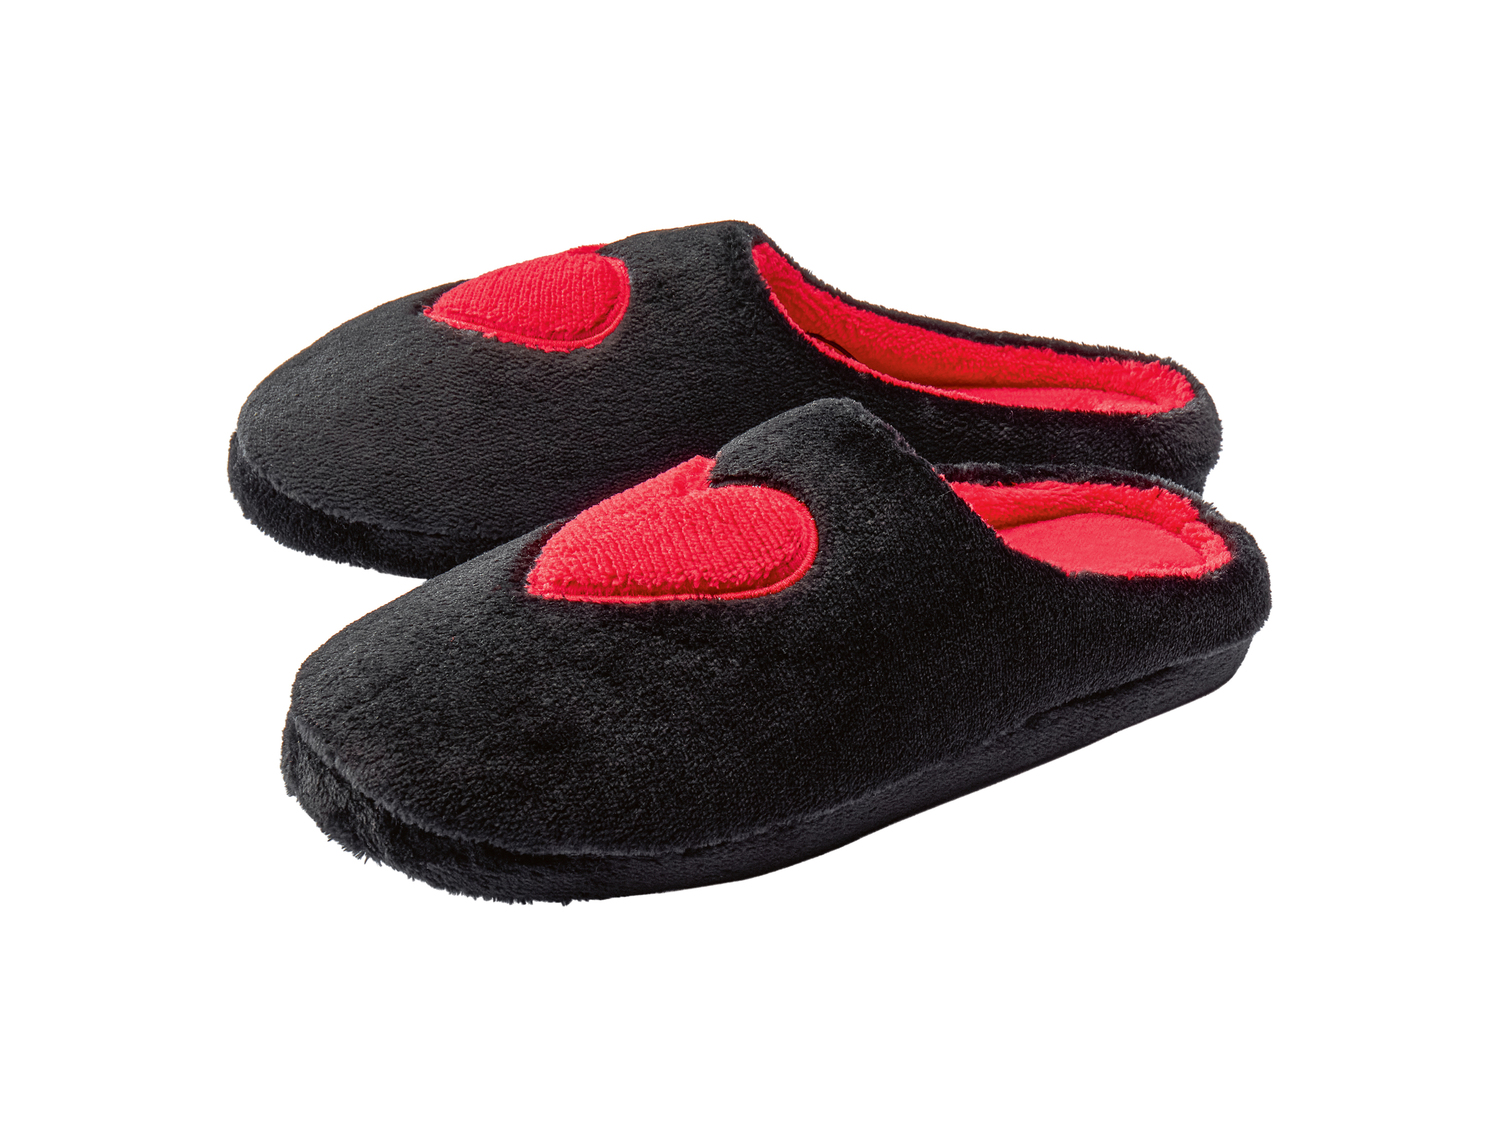 Pantofole da donna Esmara, prezzo 6.99 &#8364; 
Misure: 36-41
Taglie disponibili

Caratteristiche
 ...